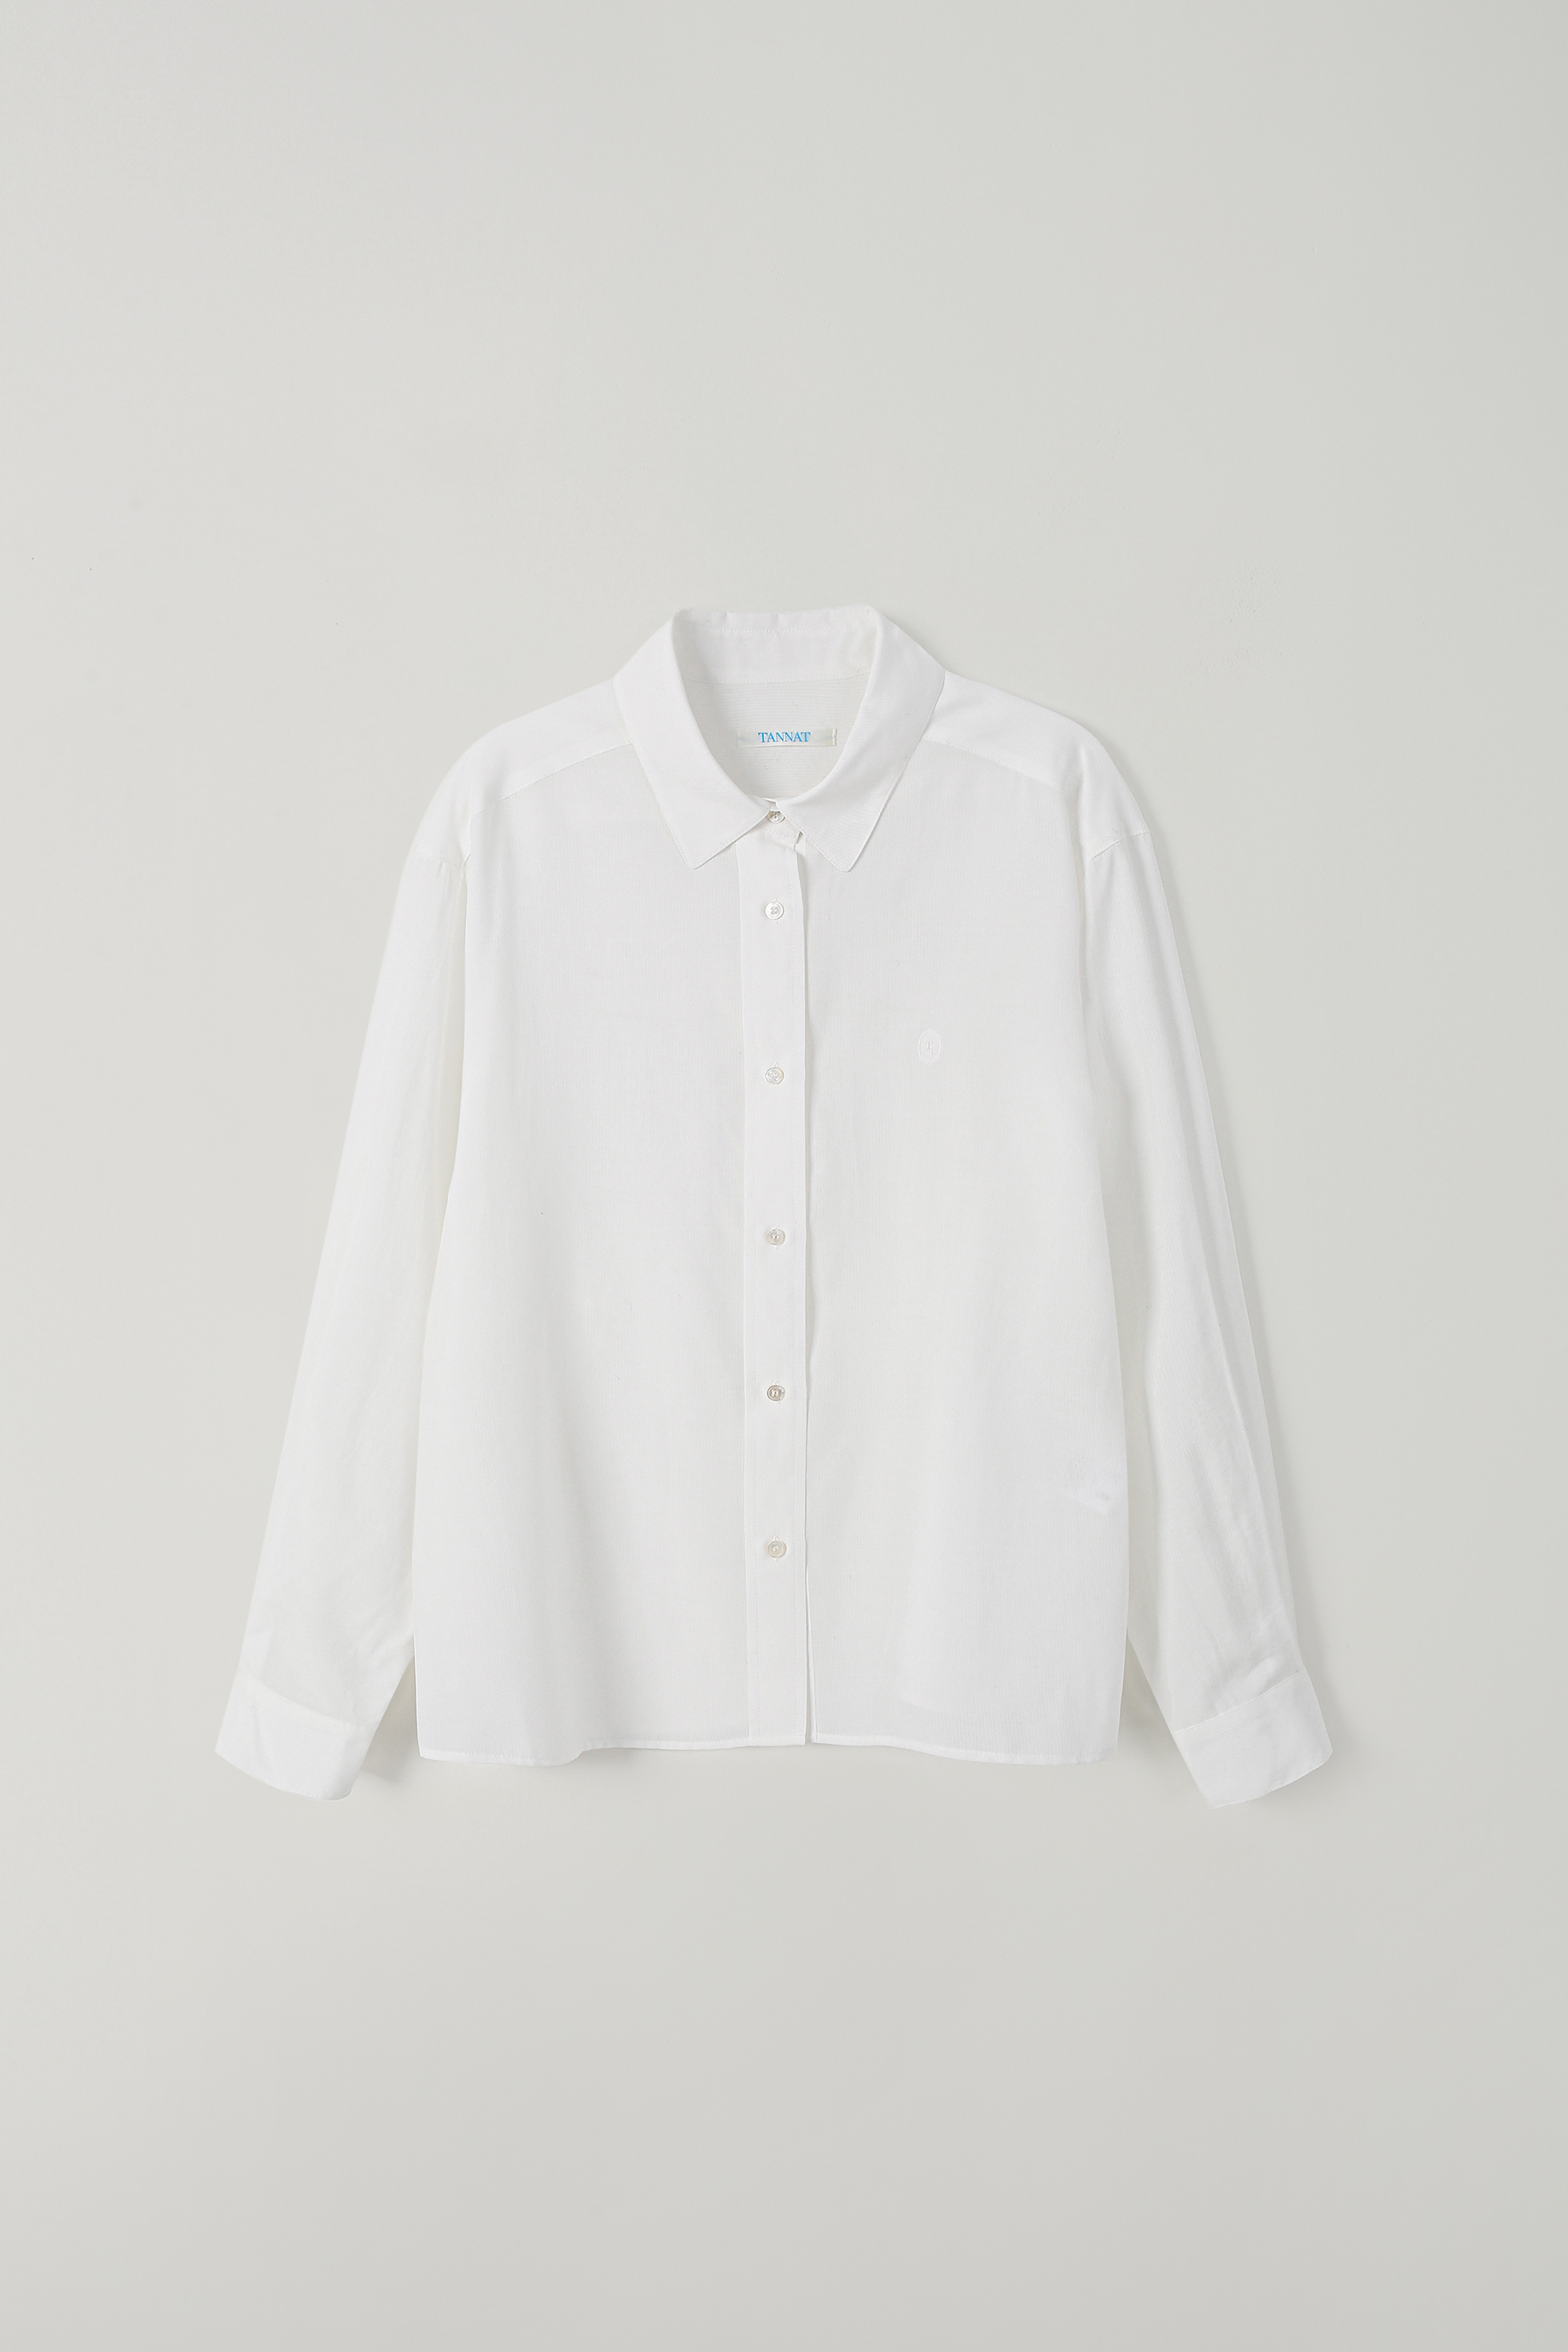 (2nd re-stock) T/T Shimmer stripe shirt (white)